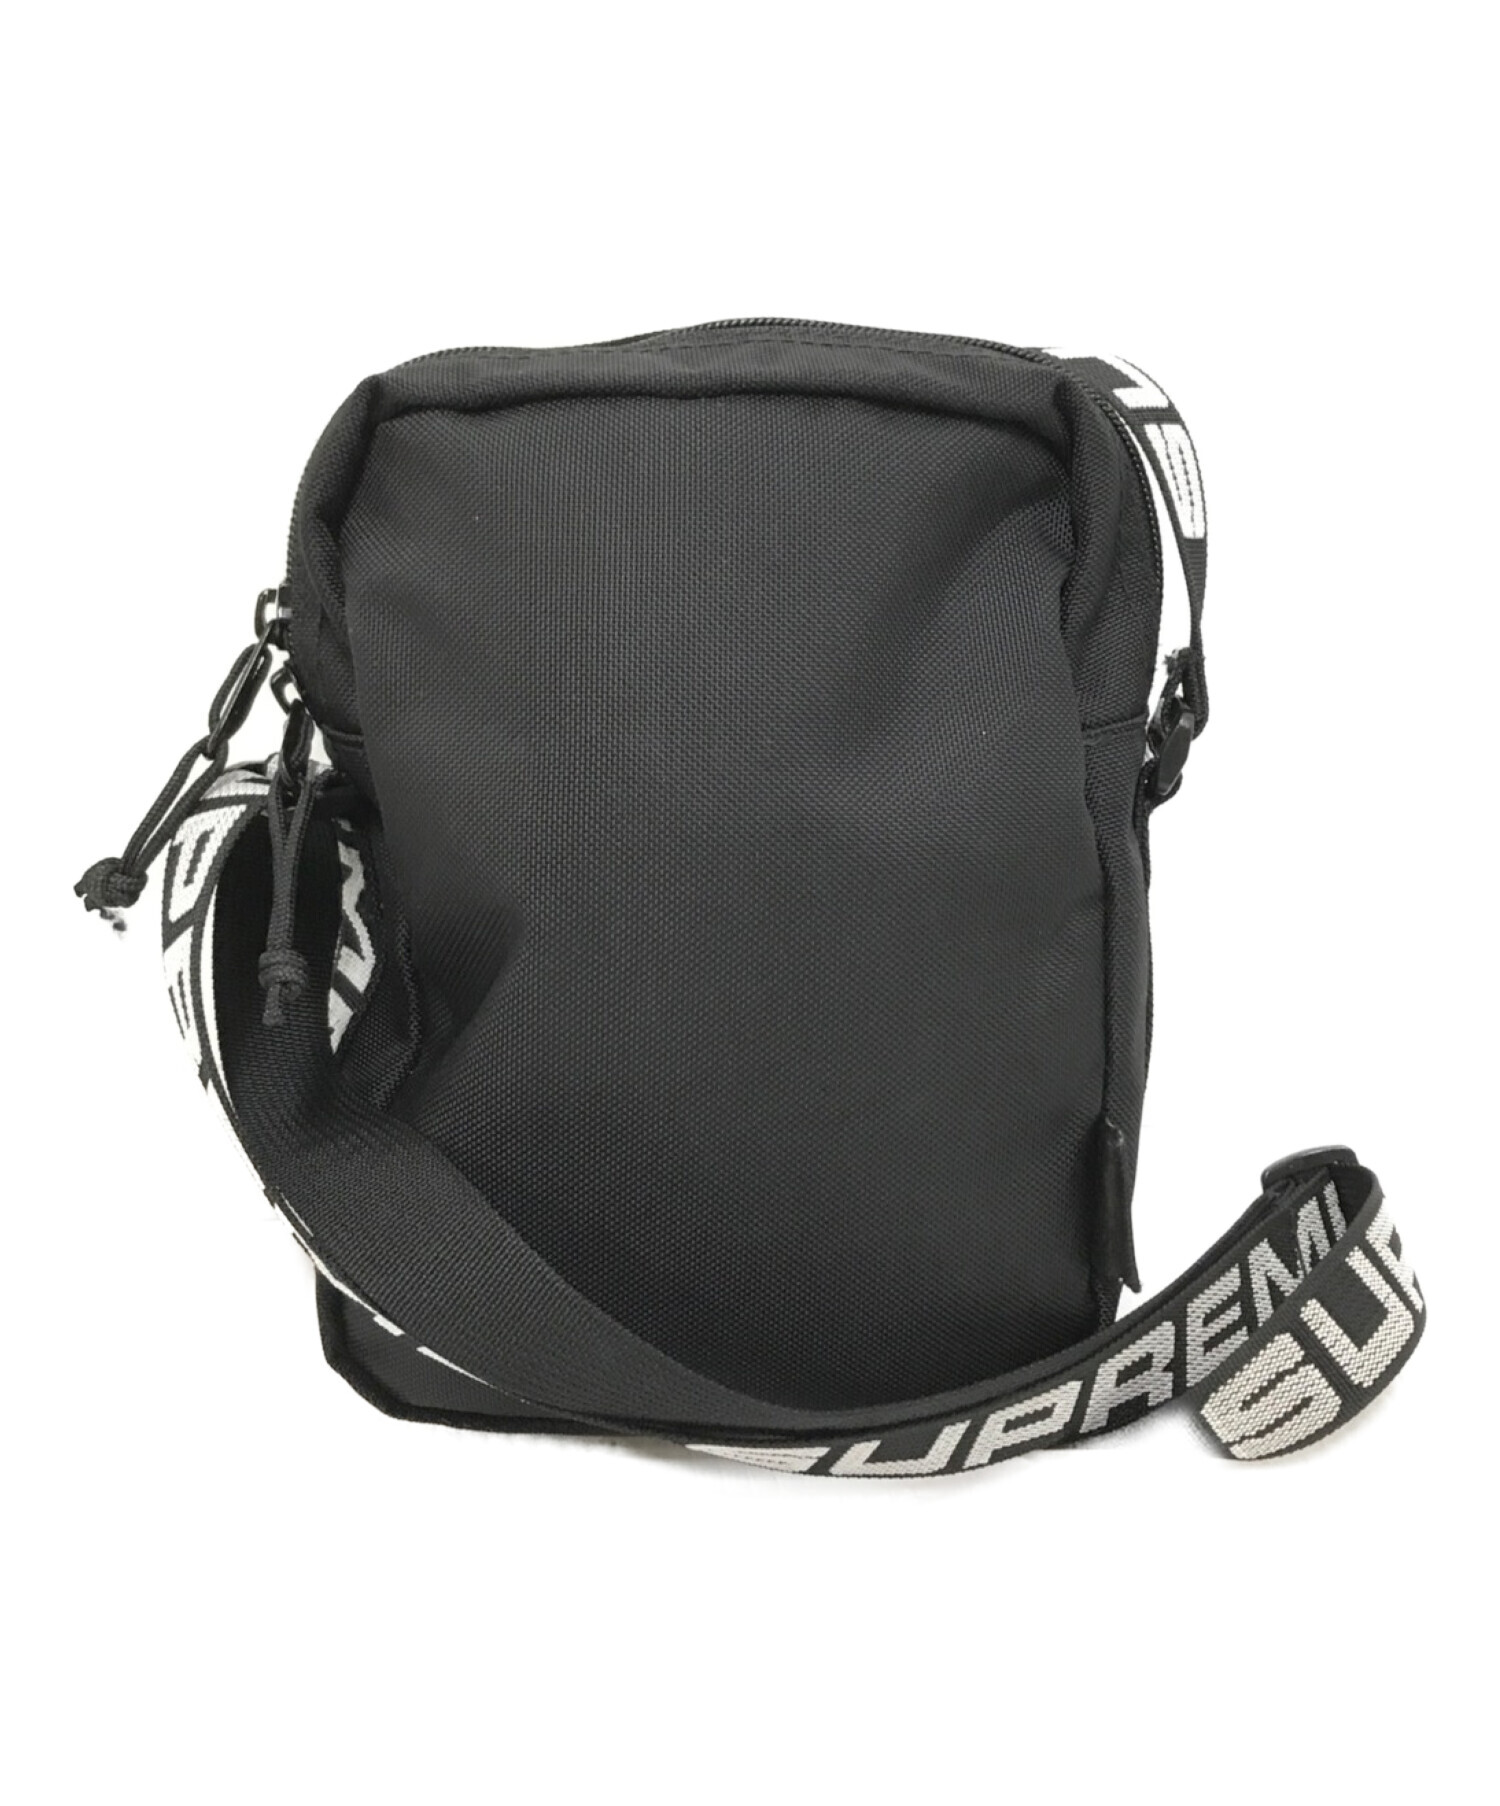 新品未使用 18ss supreme  shoulder bag 黒 ブラック